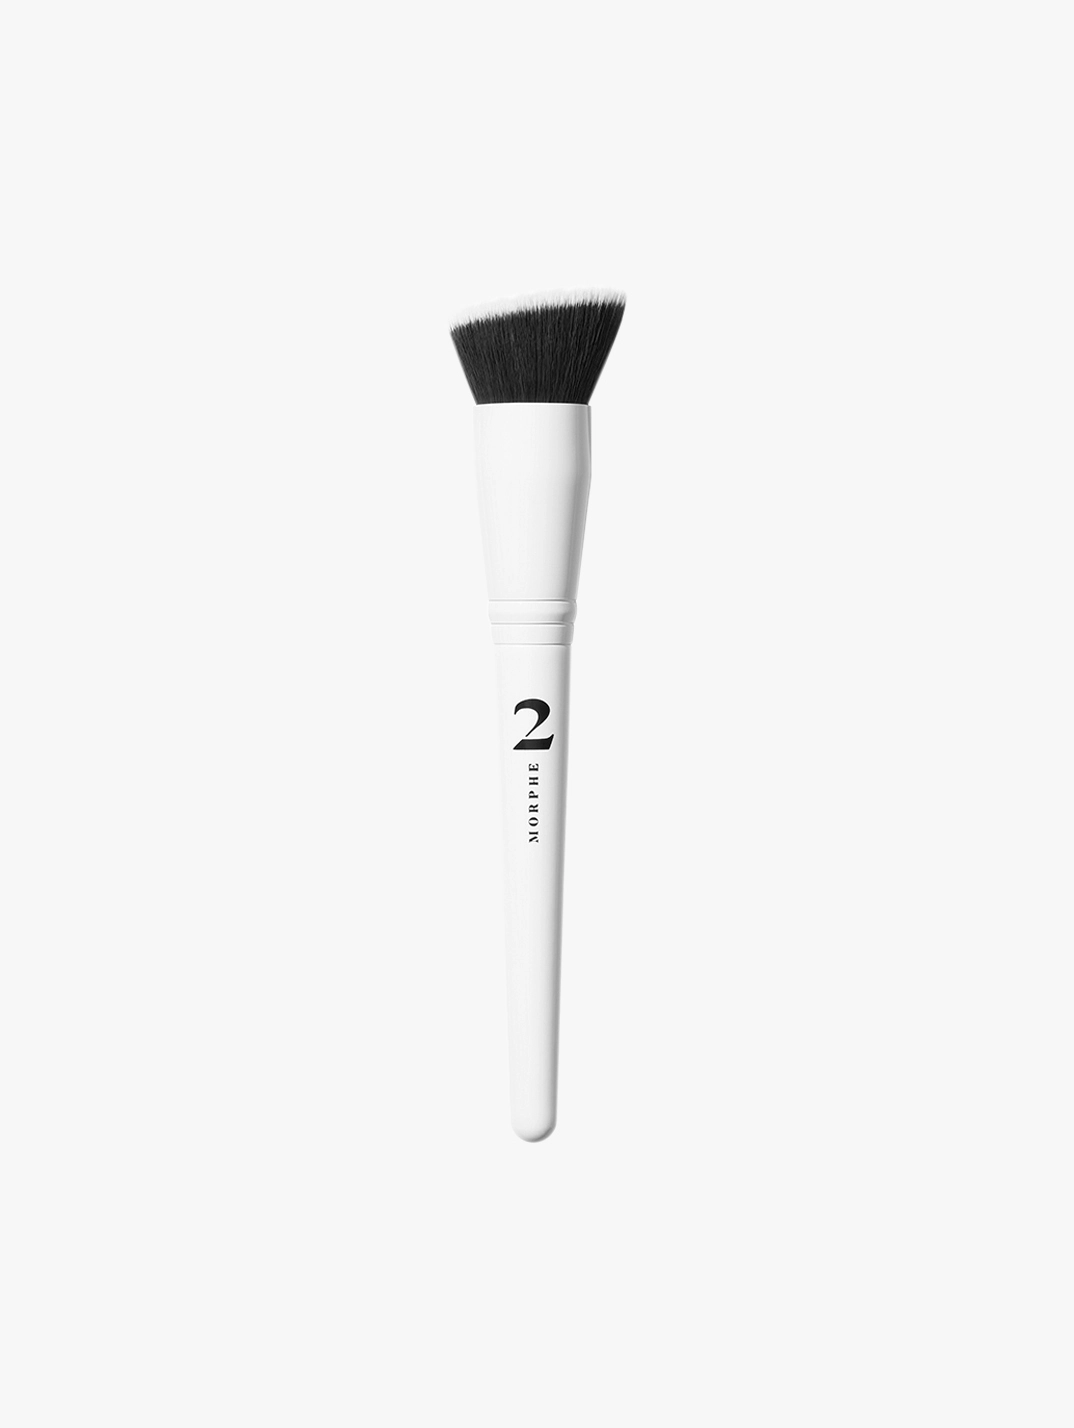 Morphe Brushes, Morphe Makeup Brush Sets